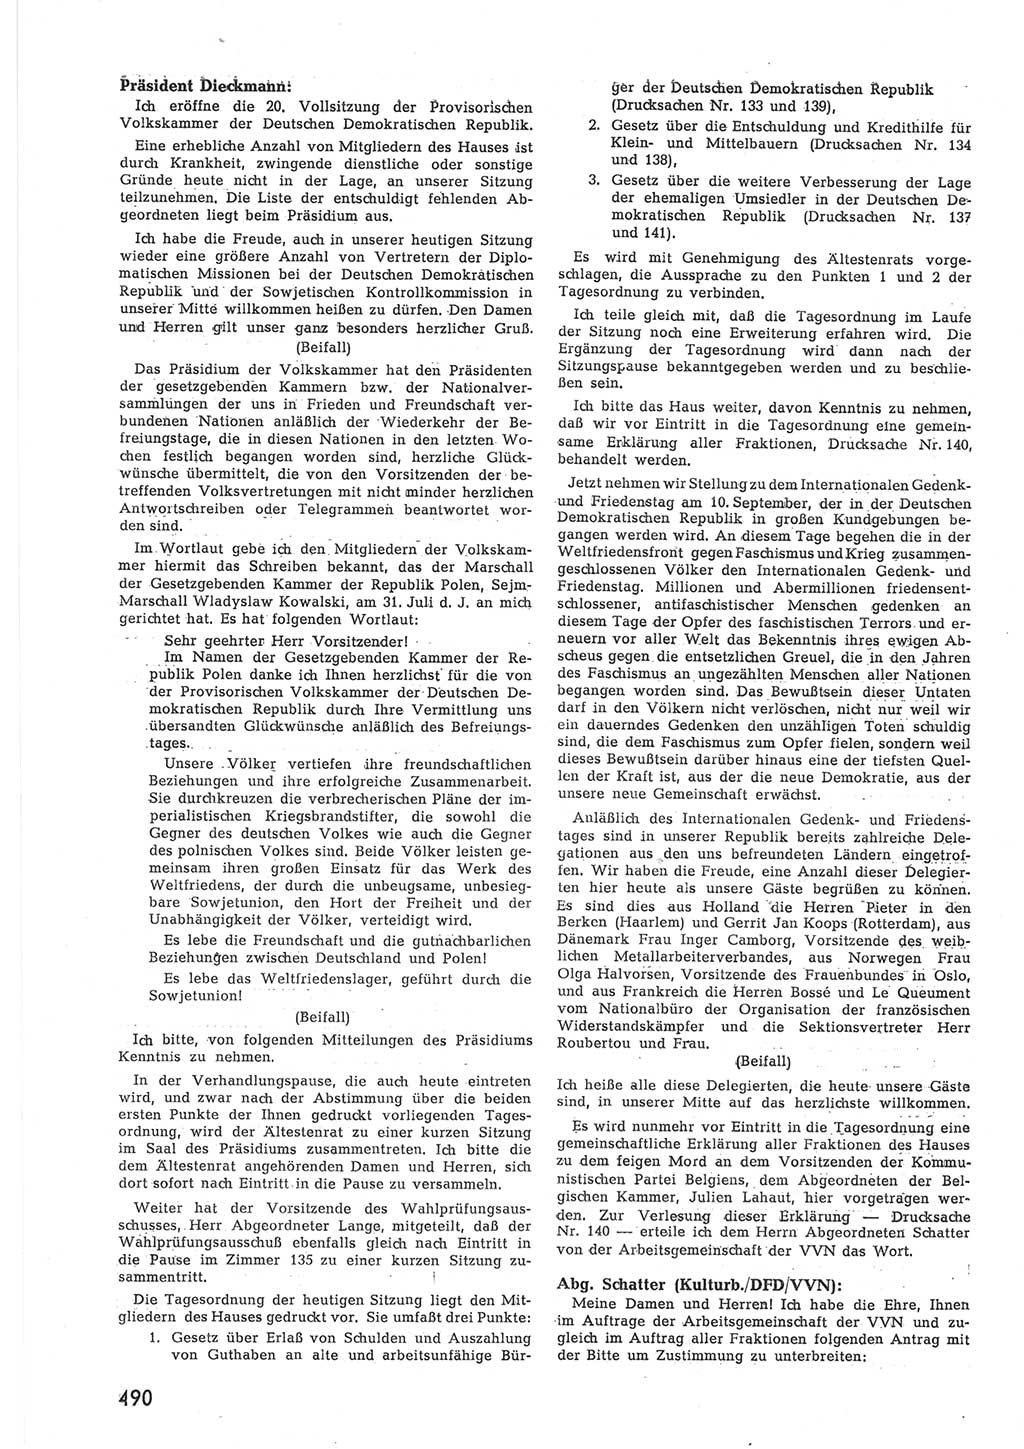 Provisorische Volkskammer (VK) der Deutschen Demokratischen Republik (DDR) 1949-1950, Dokument 508 (Prov. VK DDR 1949-1950, Dok. 508)